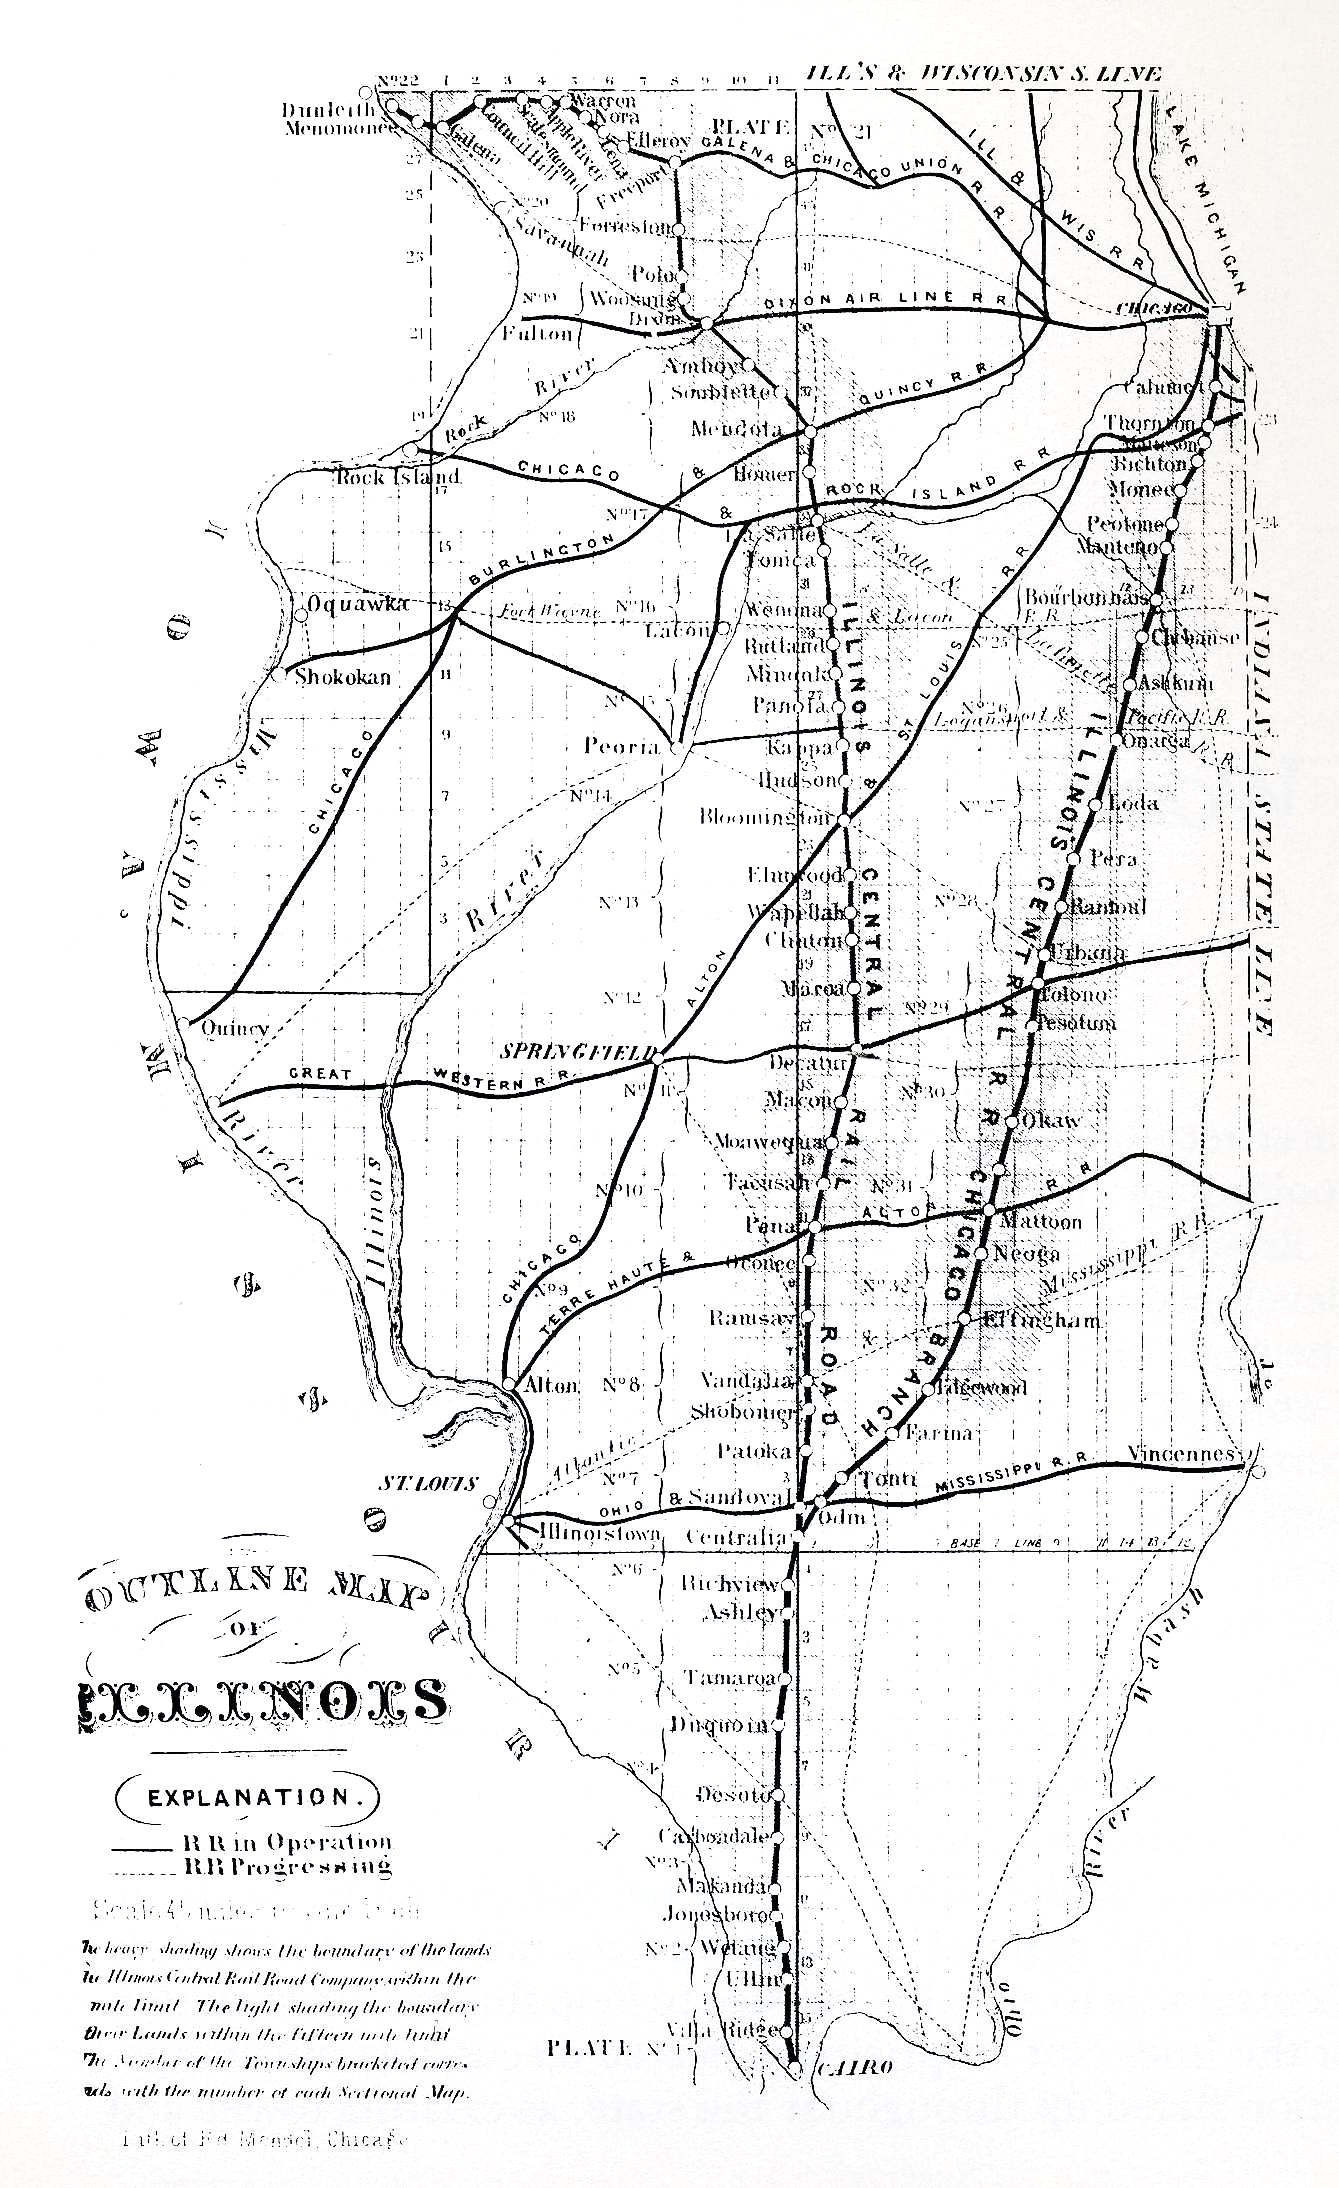 Origins of Flossmoor-state map